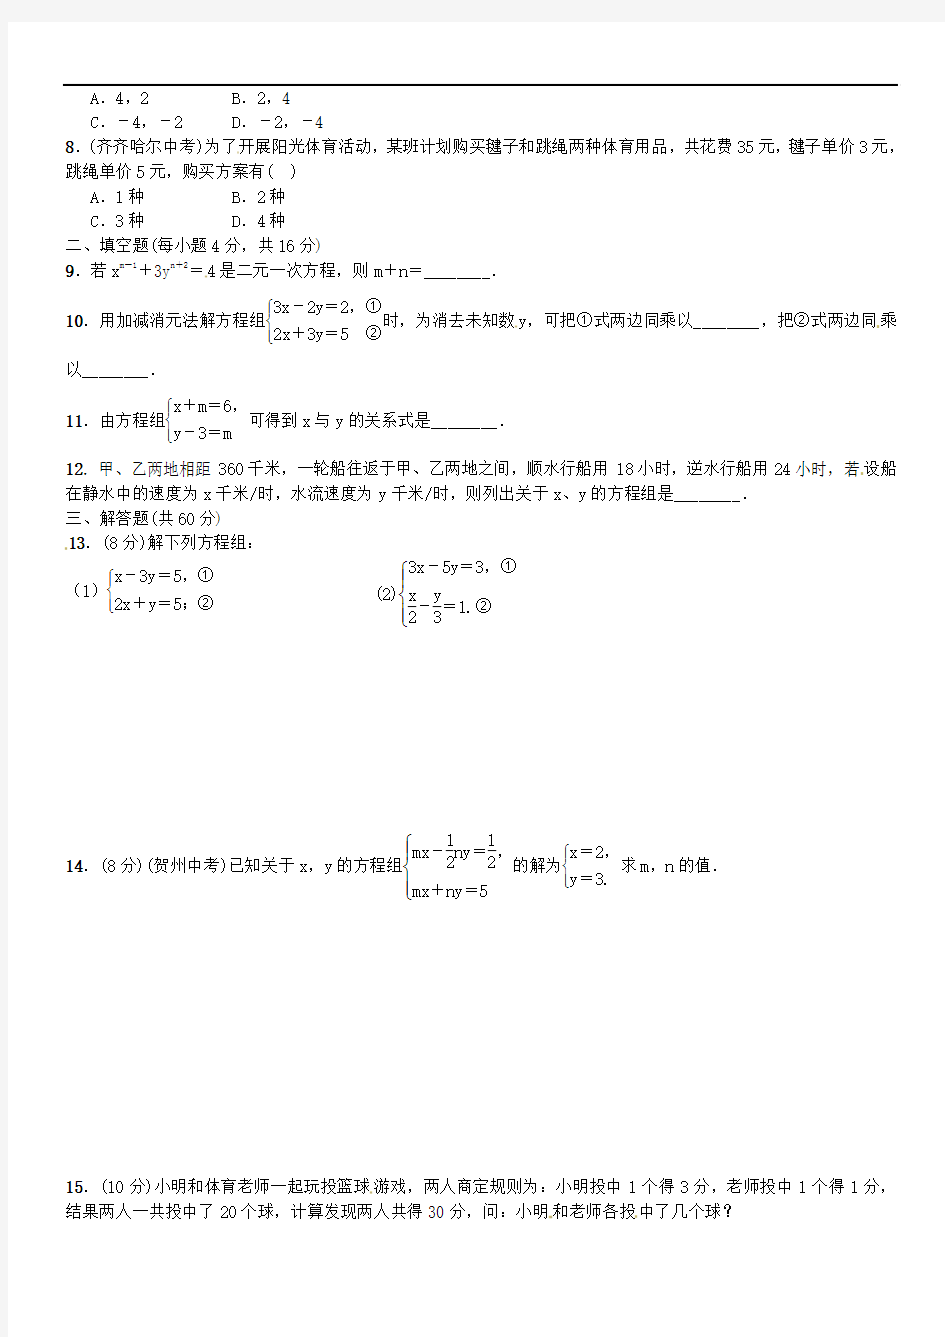 七年级数学下册第1章二元一次方程组测试题(新版)湘教版